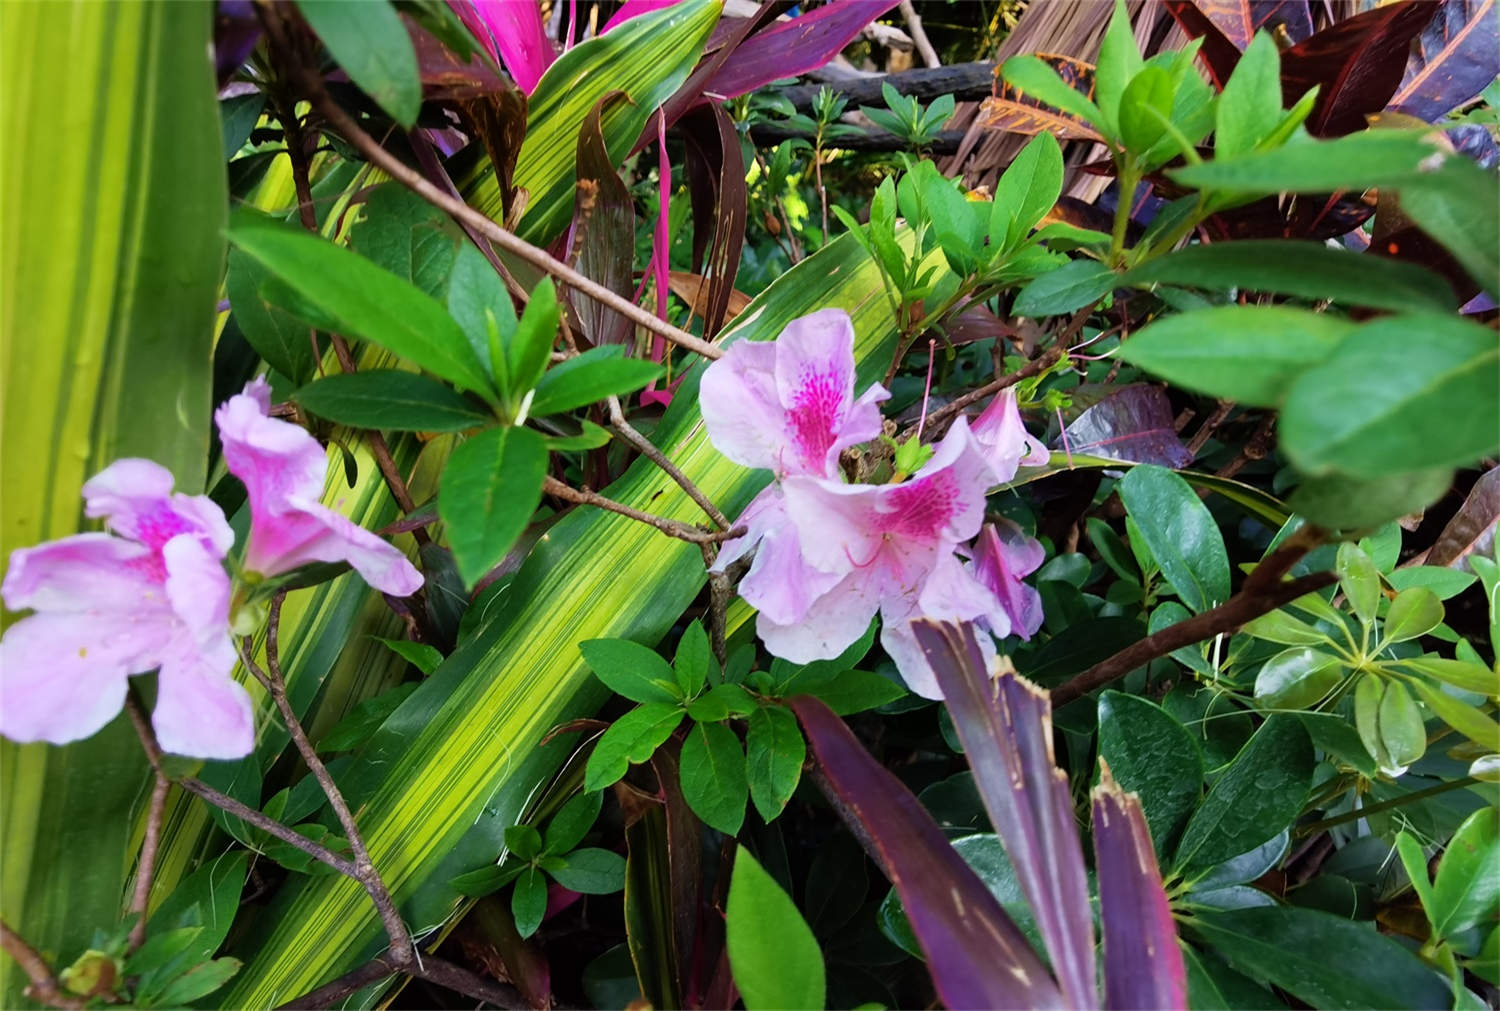 杜鹃花molle japonicum 库存照片. 图片 包括有 花卉, 密集, 石南花, 楼梯栏杆, 本质 - 131255562